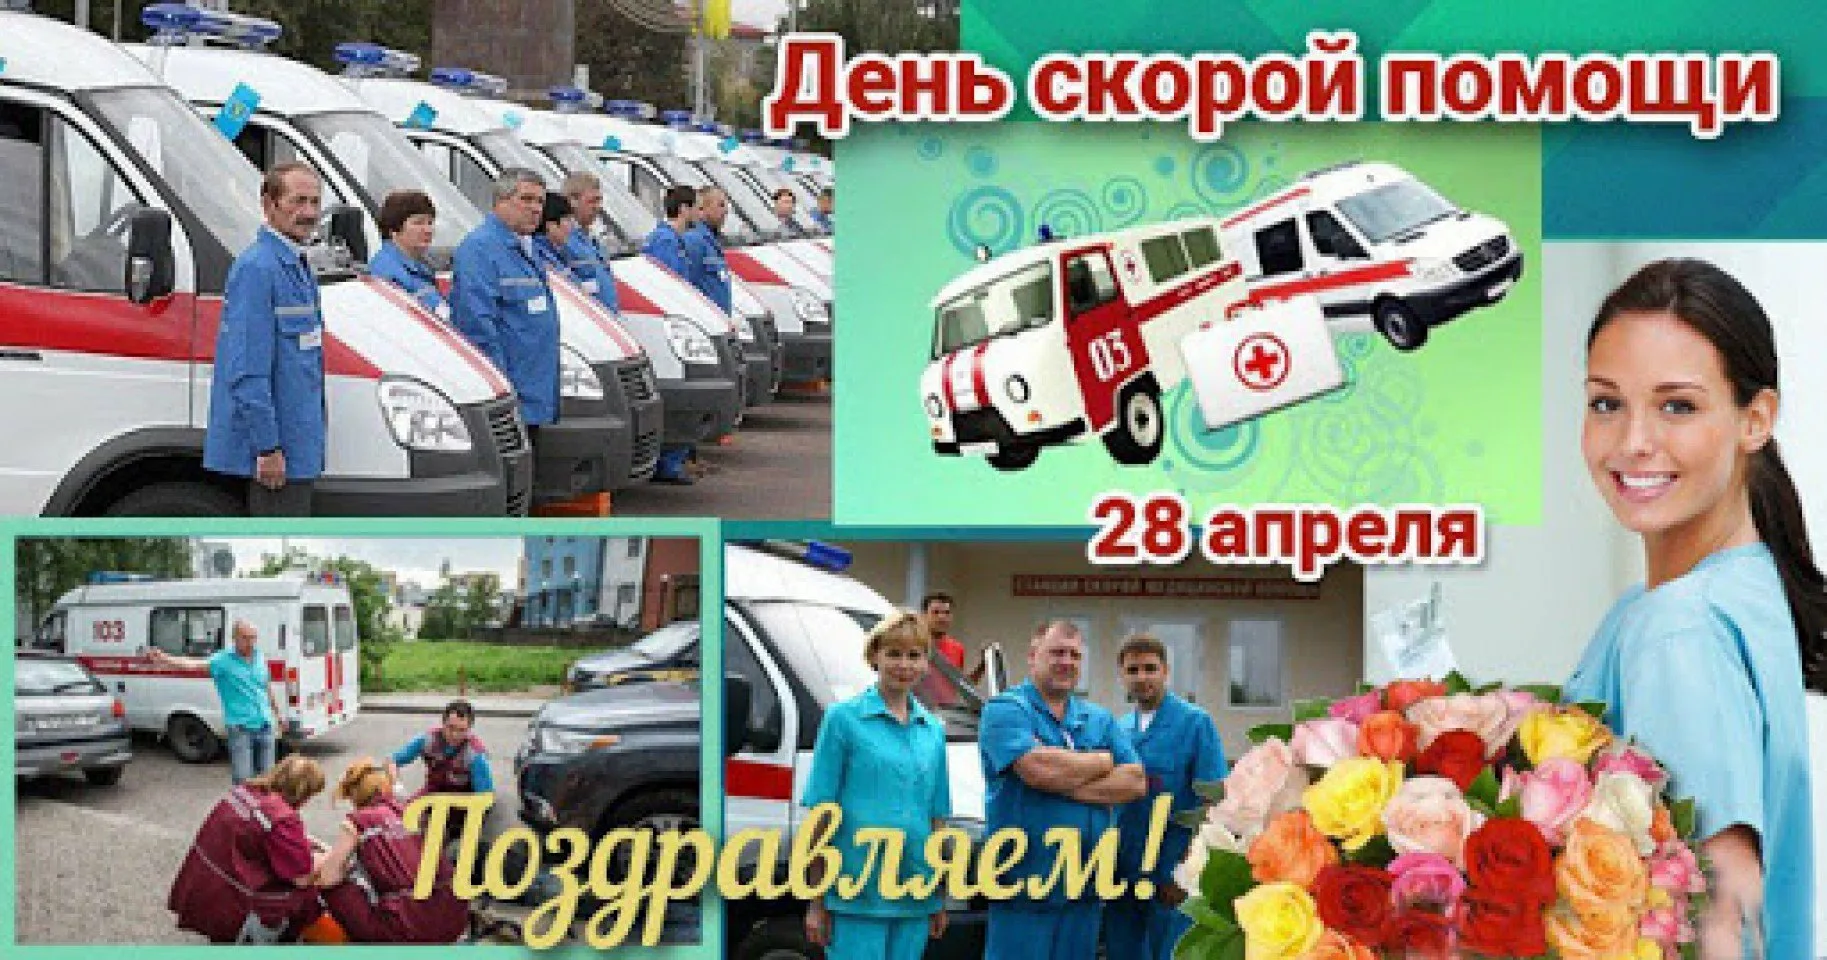 28 апреля день скорой. 28 Апреля день скорой медицинской помощи. С днем скорой помощи. С днем работника скорой помощи. 28 Апреля день работников скорой.